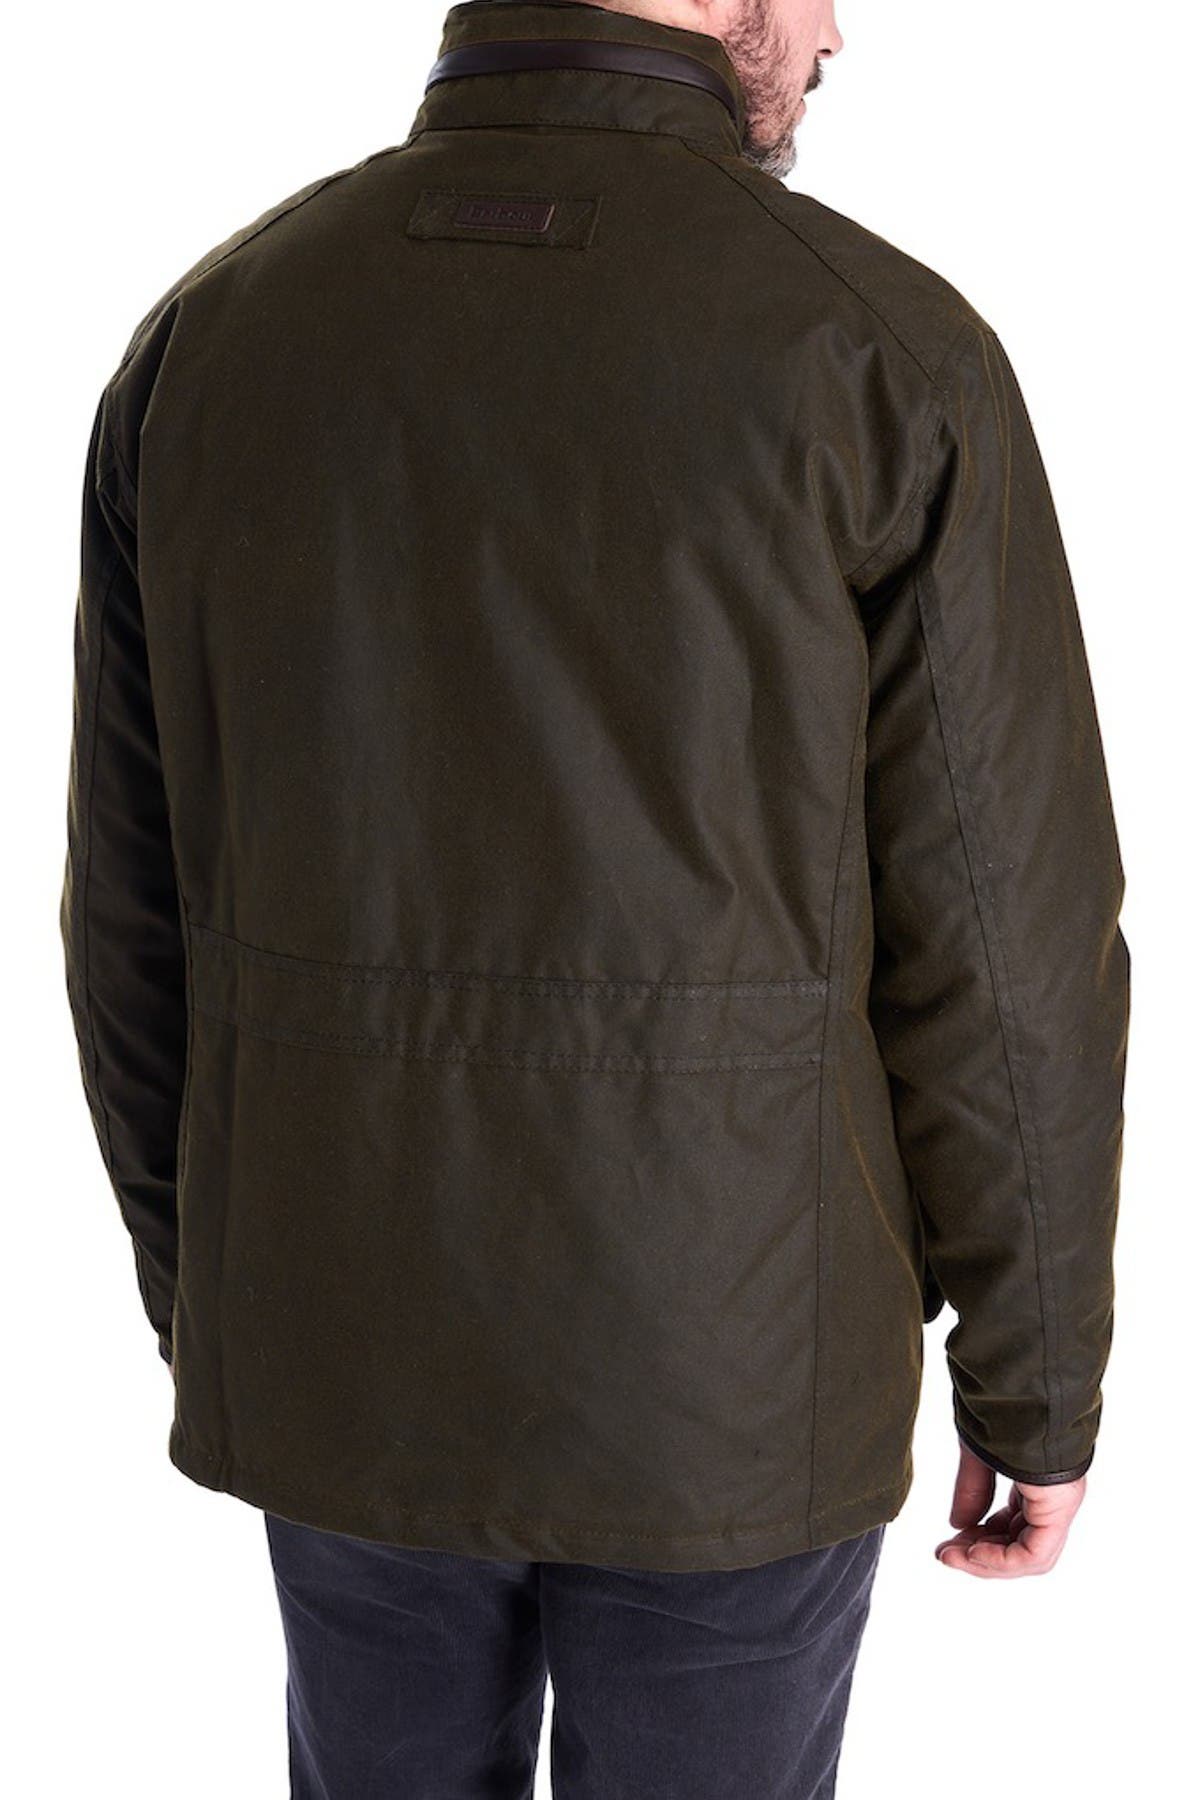 barbour latrigg jacket